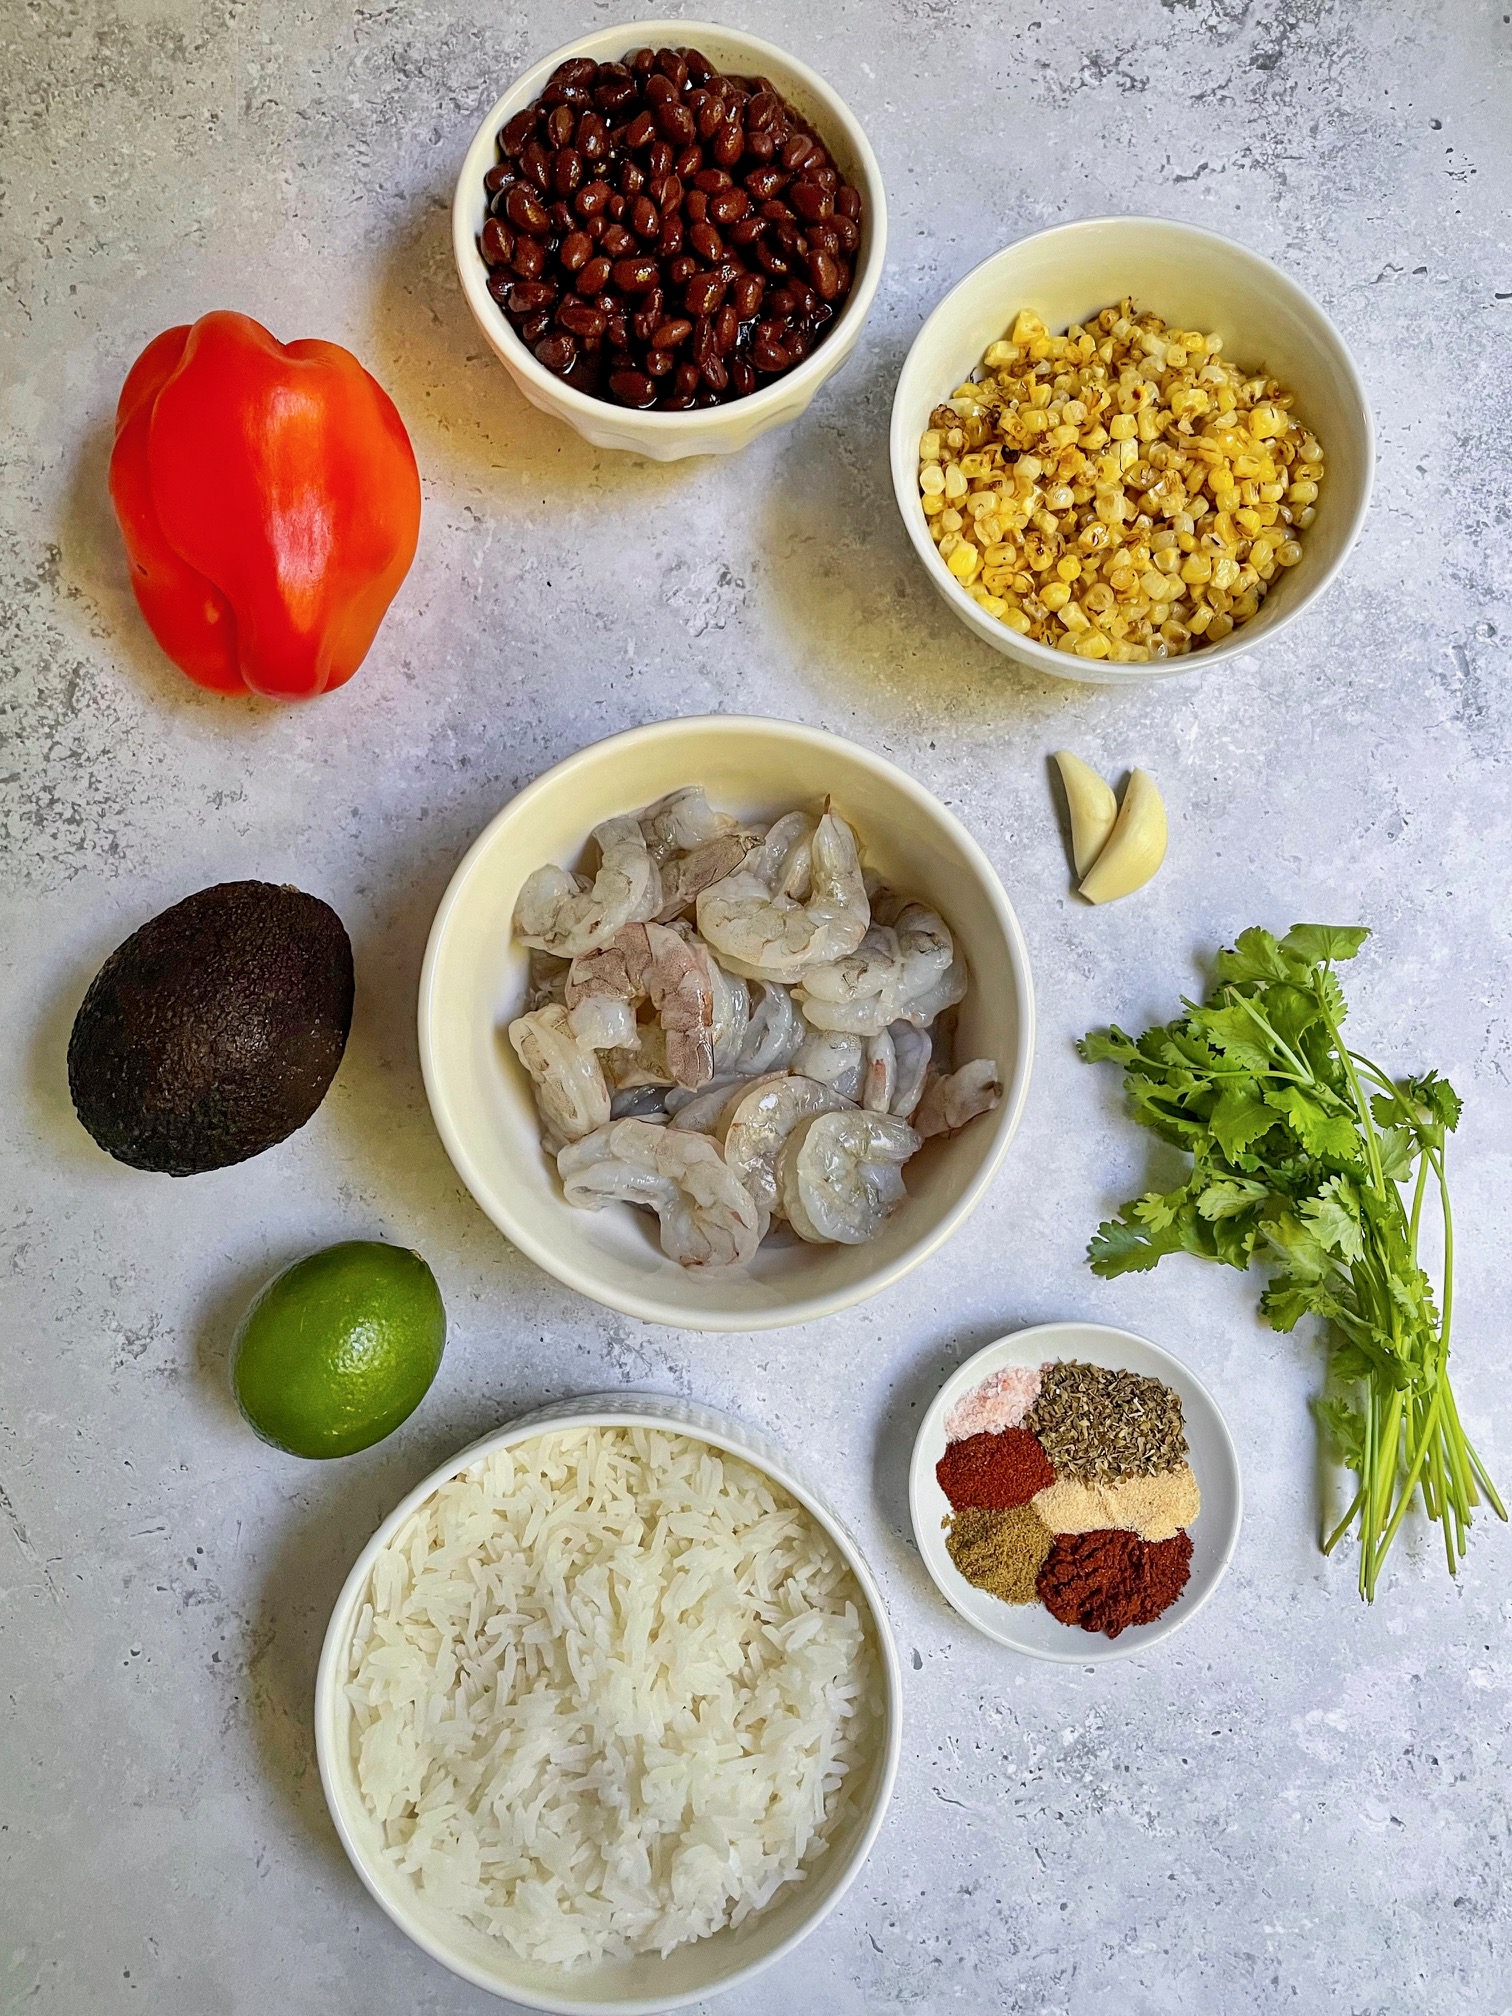 the shrimp burrito bowl ingredients.